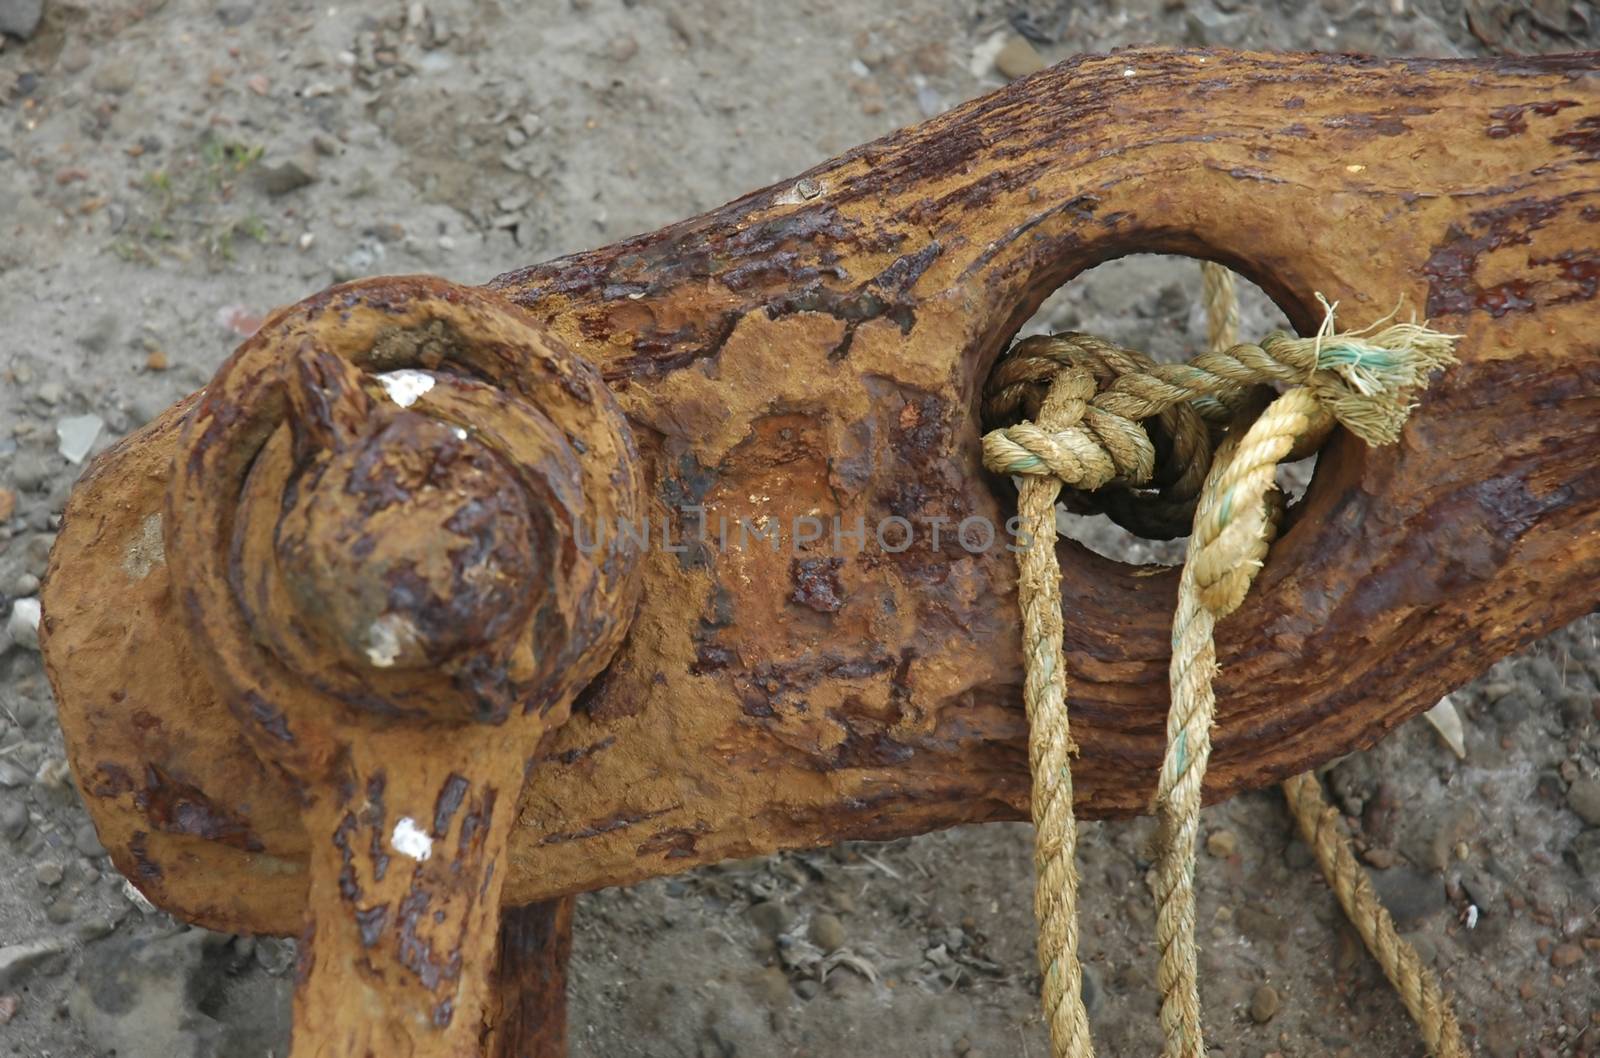 A rusty anchor on a beach